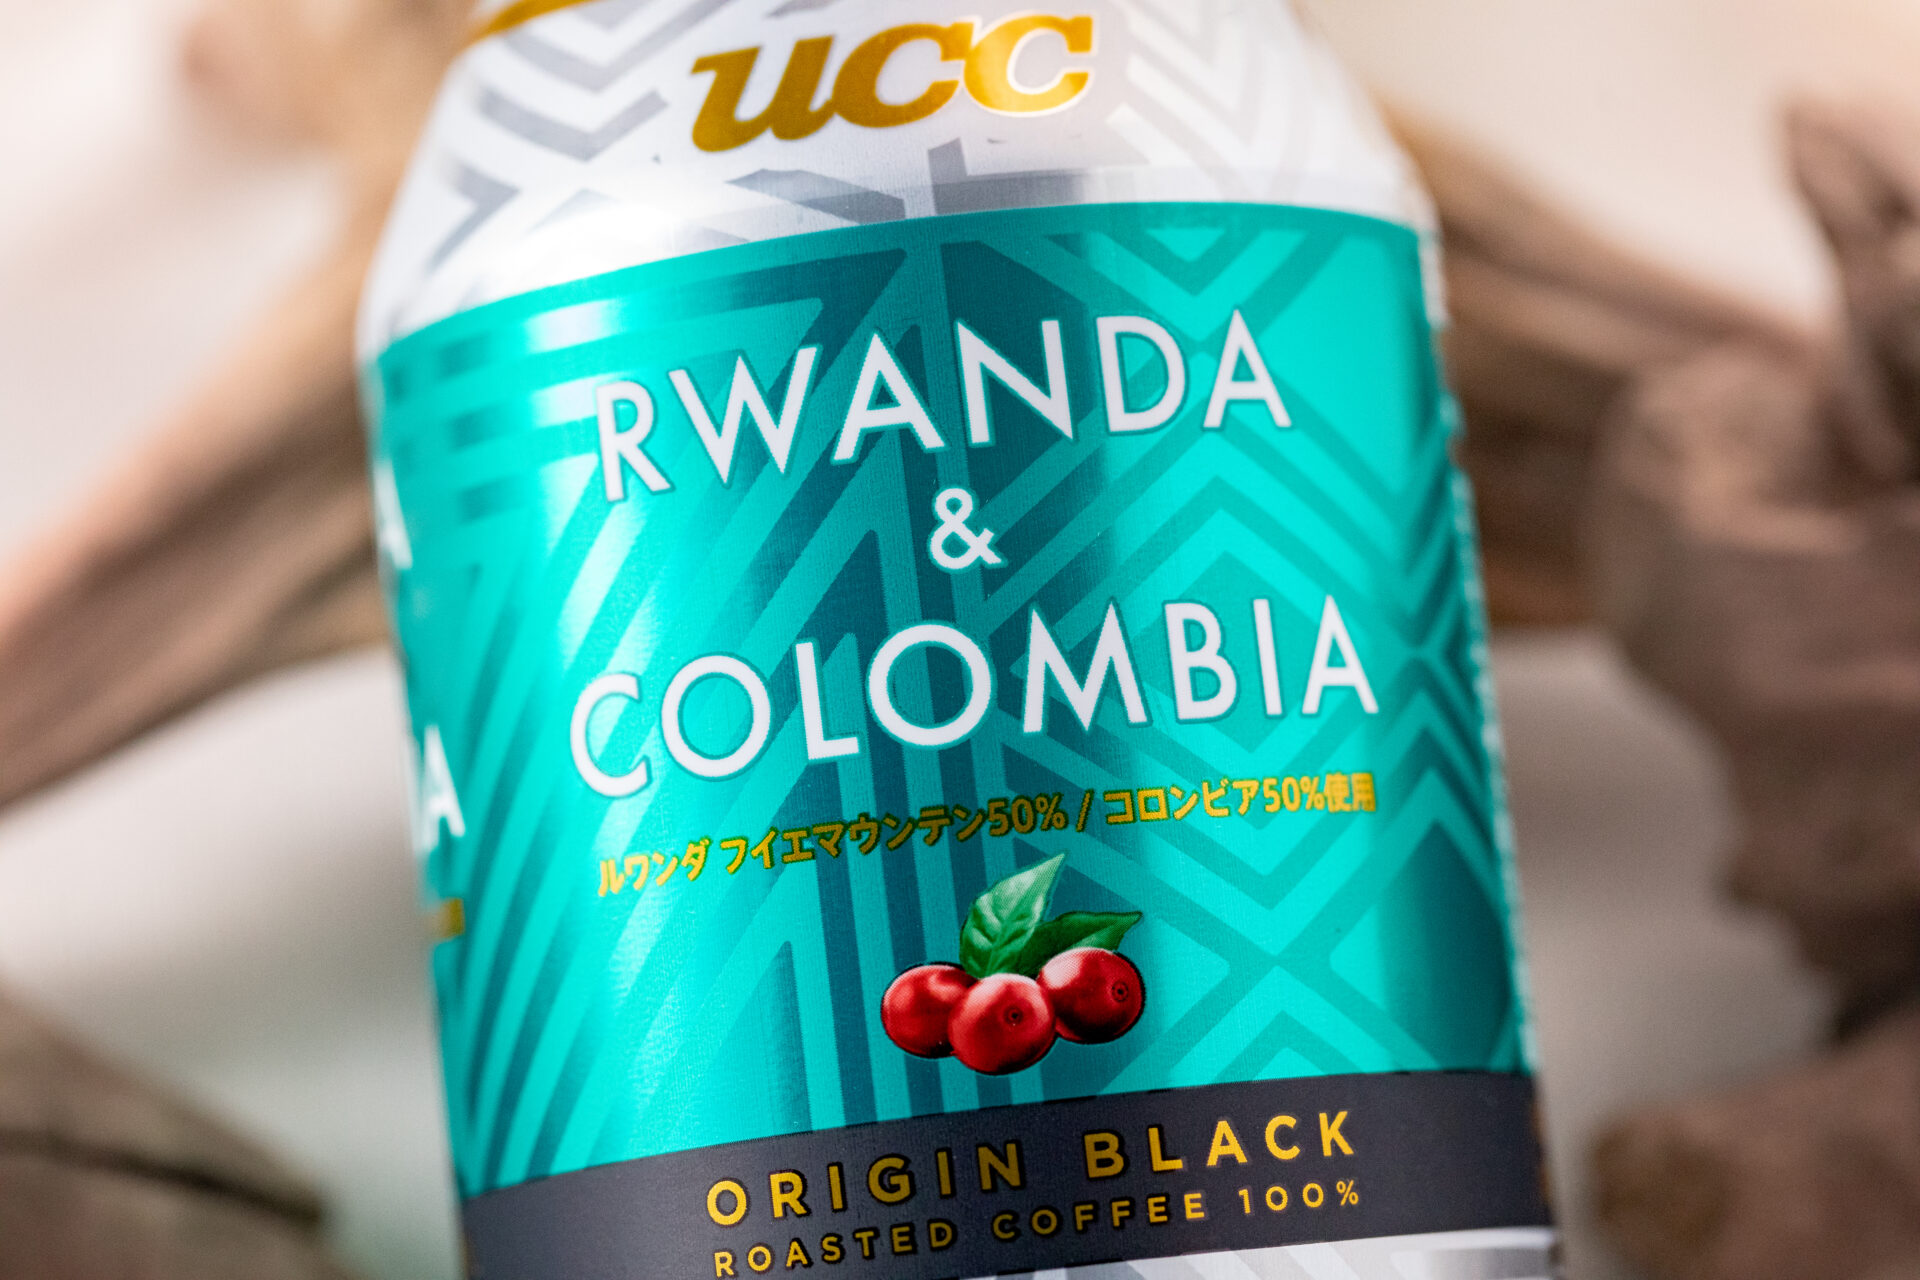 UCC『ORIGIN BLACK ルワンダ & コロンビア』は香り高くフルーティーで甘い風味と酸味を感じられる、バランス型ブラックコーヒー！